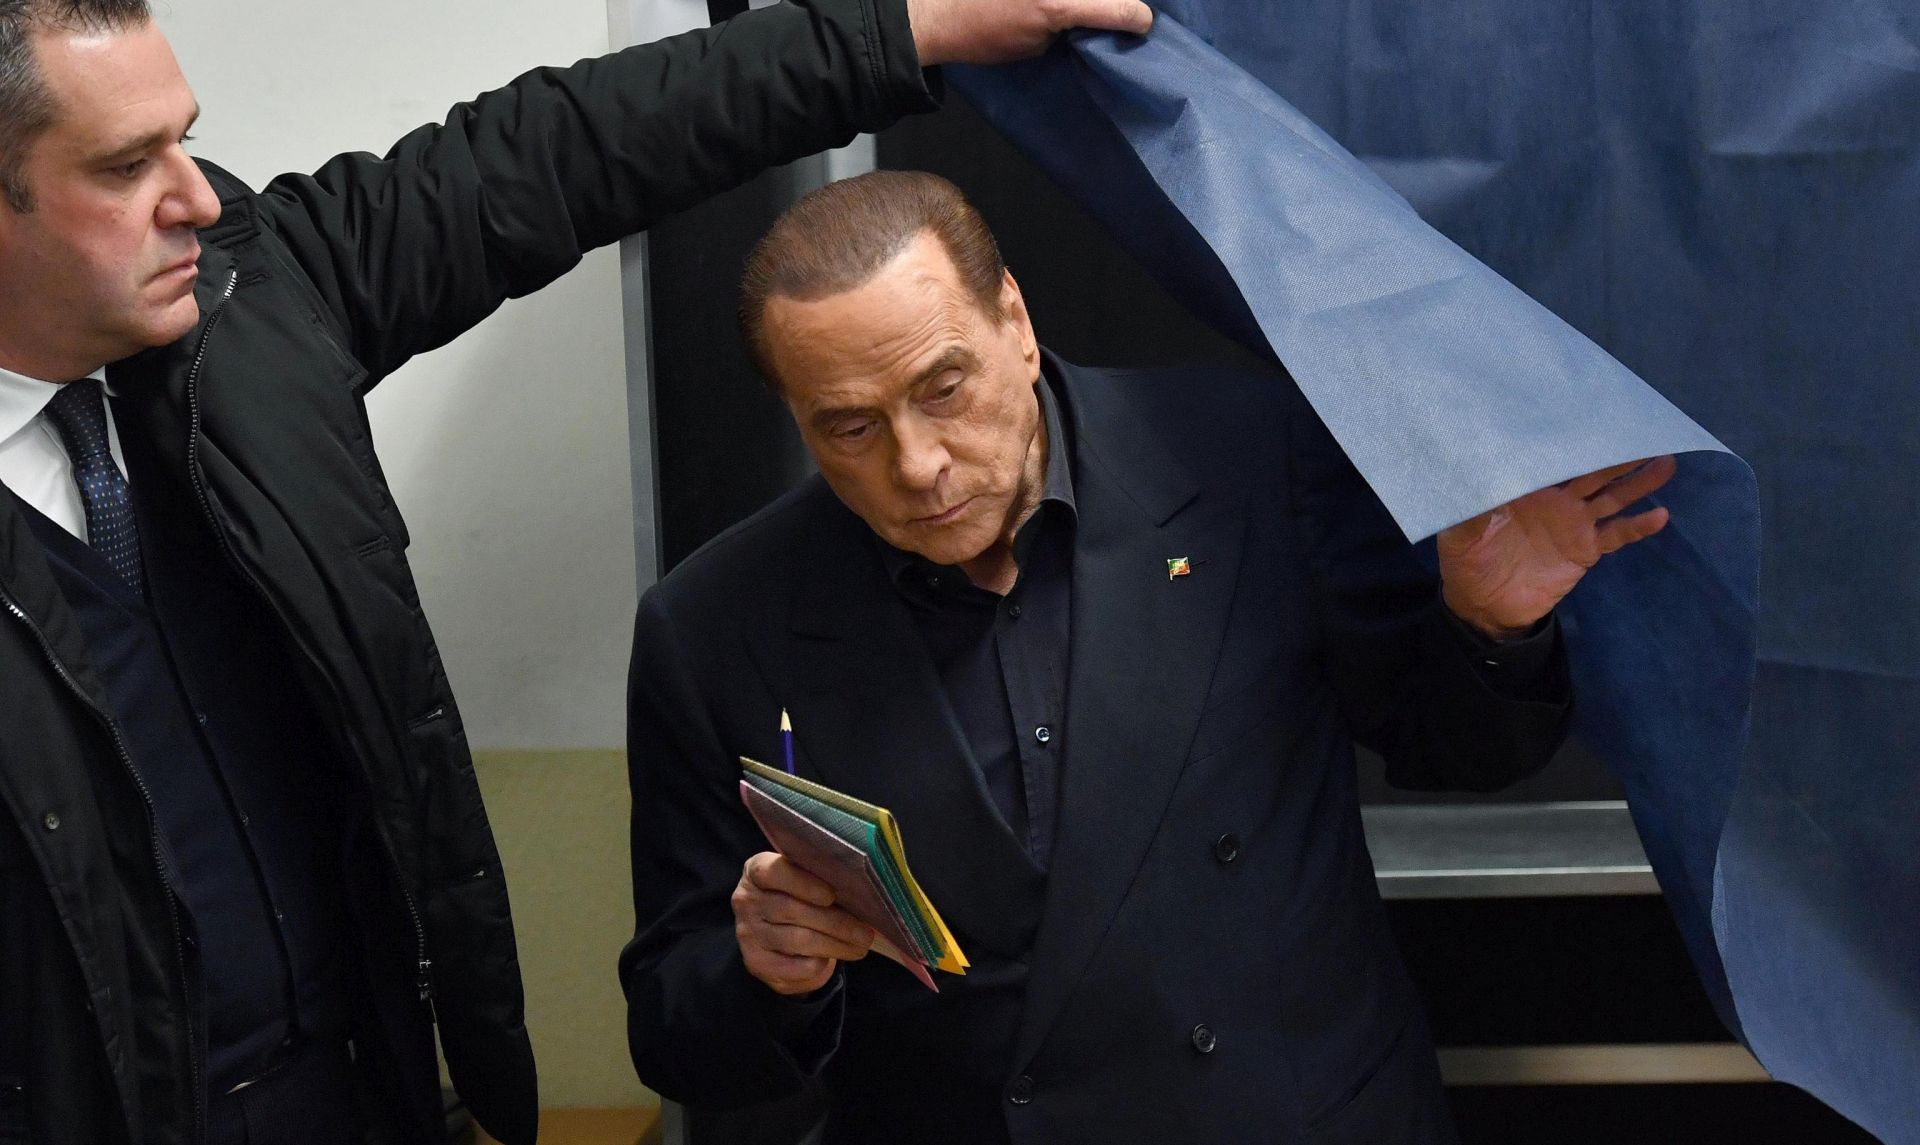 IZLAZNE ANKETE U Italiji vodi Berlusconi i koalicija desnog centra